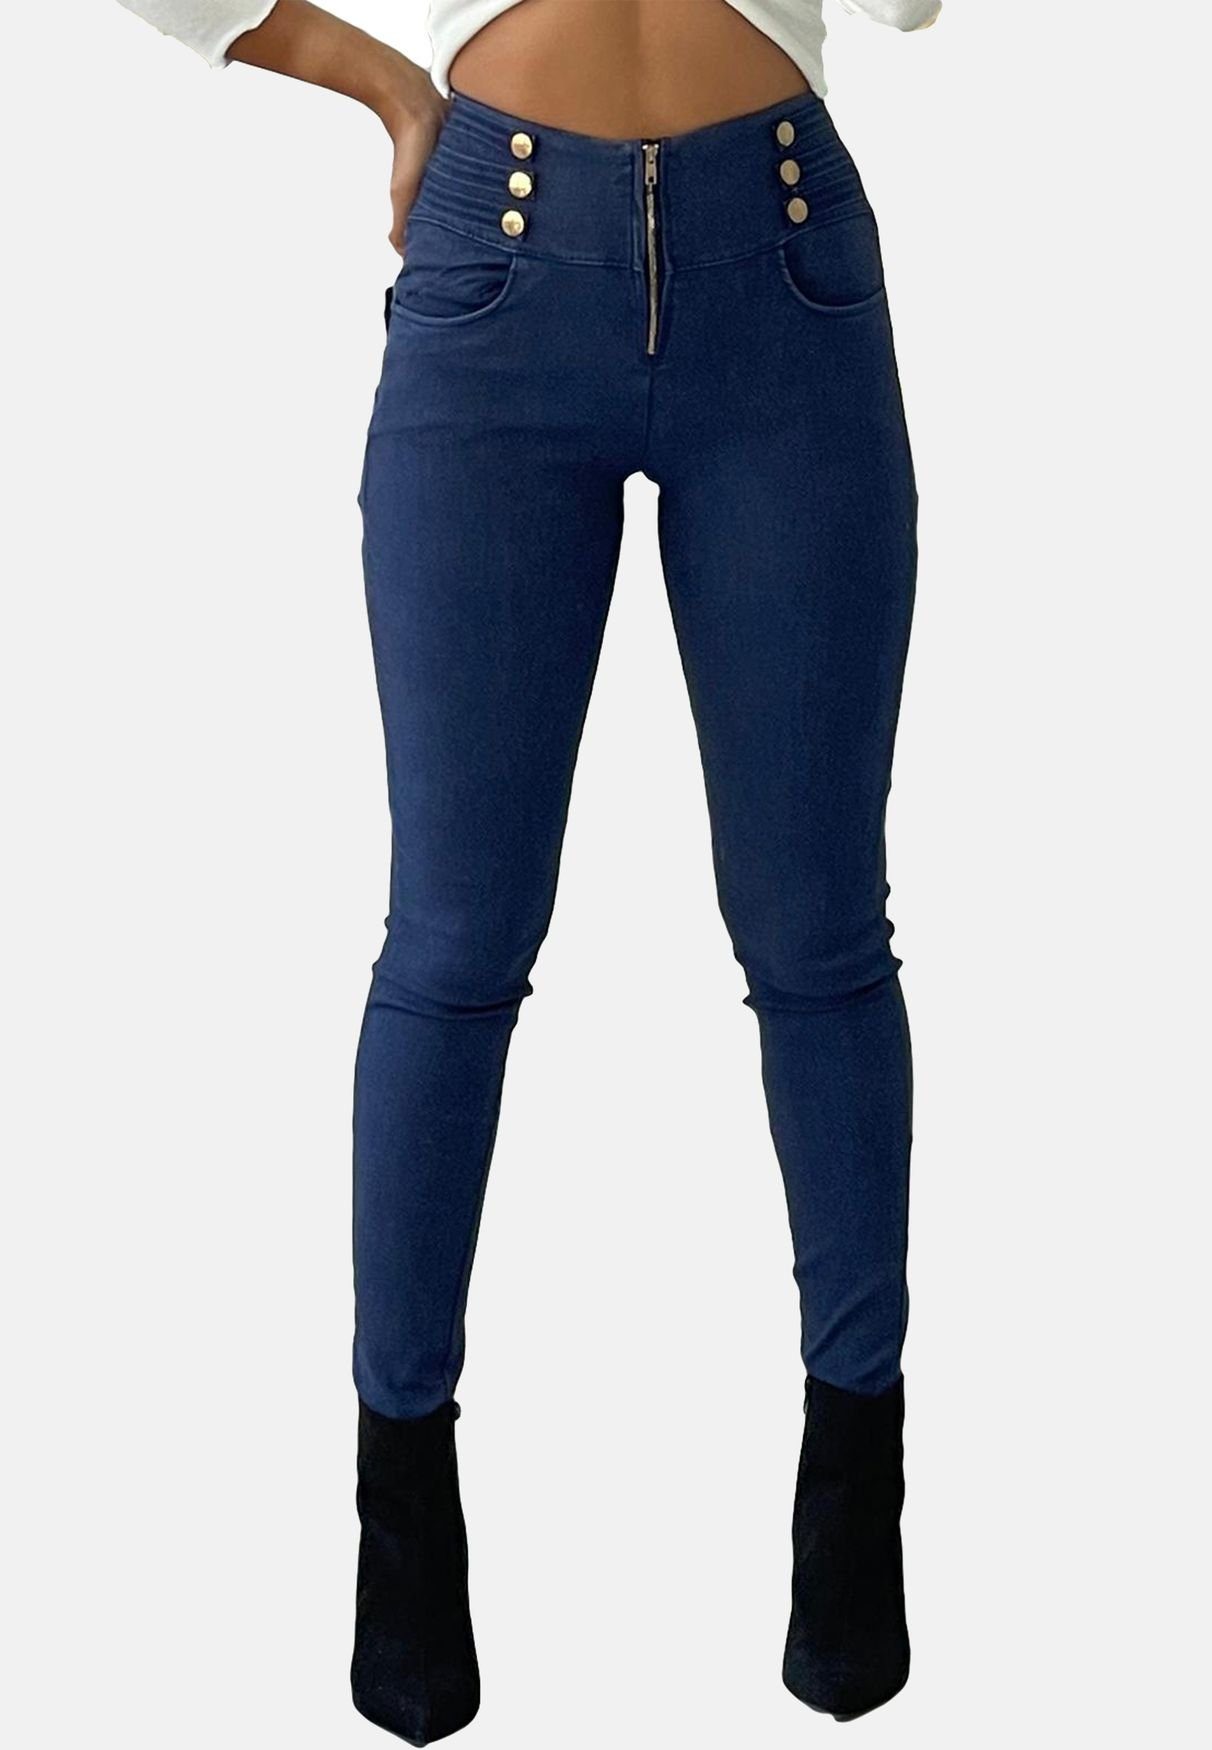 OYSOHE Damen 3D Jeans Leggings Elastische Taille Skinny Freizeithosen Hohe Taille Stretchhose S-XL 